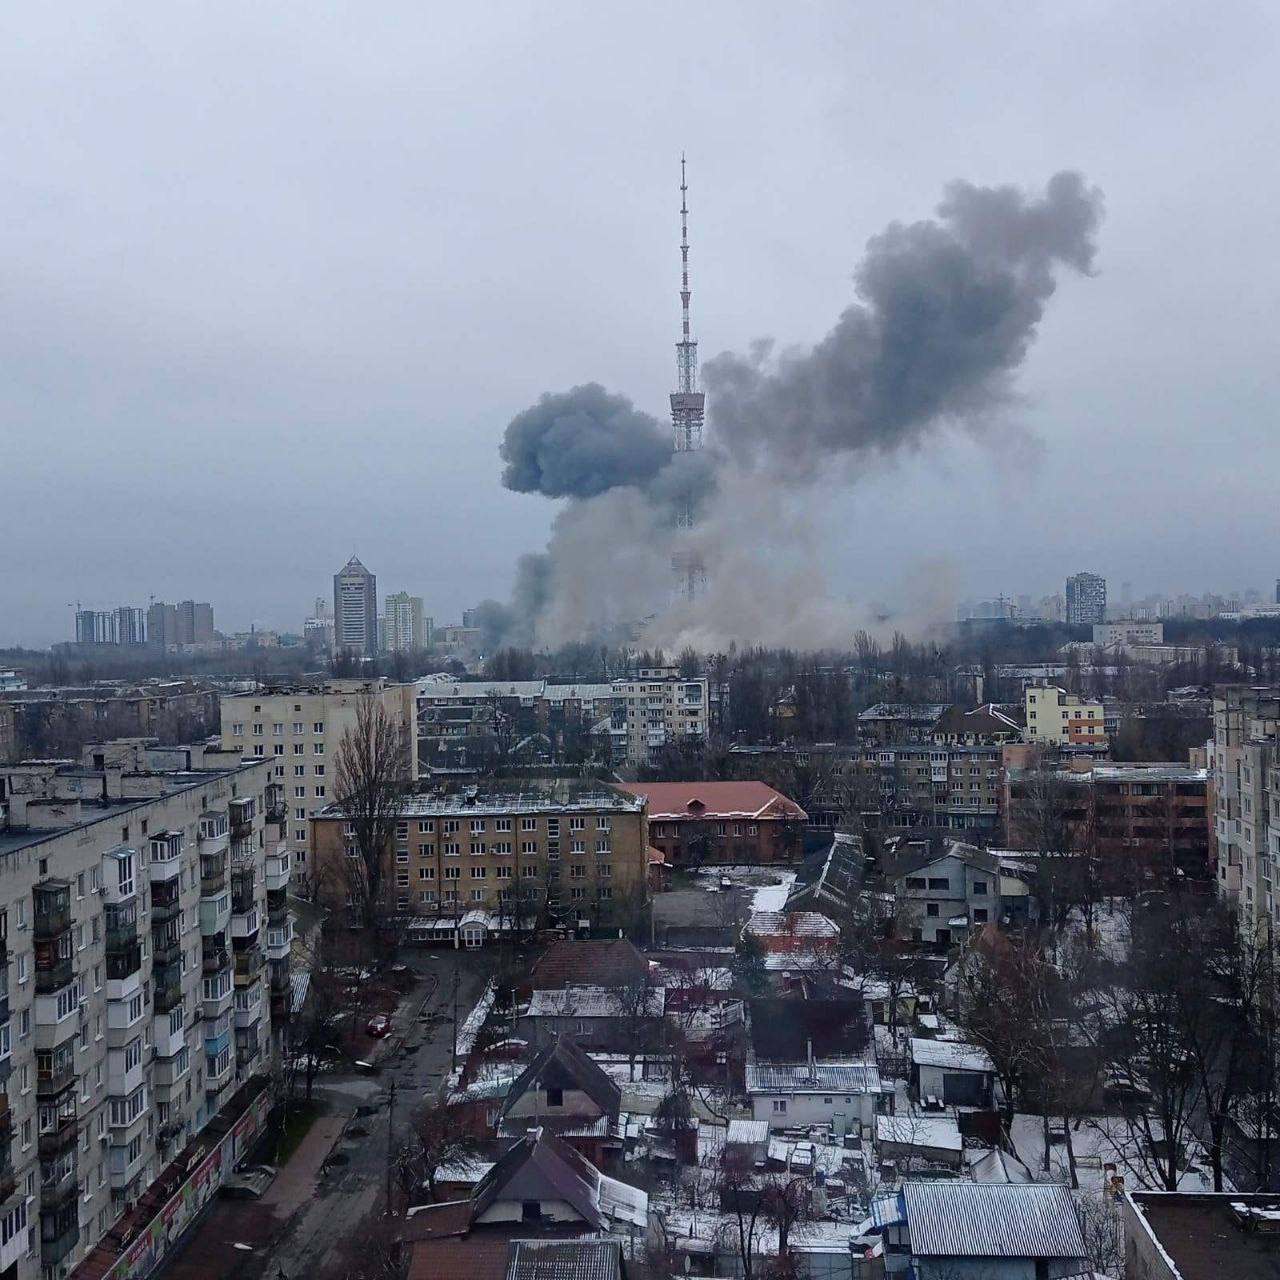 रुसी सेनाले युक्रेनको राजधानी कीभ टिभी टावरमा आक्रमण गर्दा ५ जनाको मृत्यु